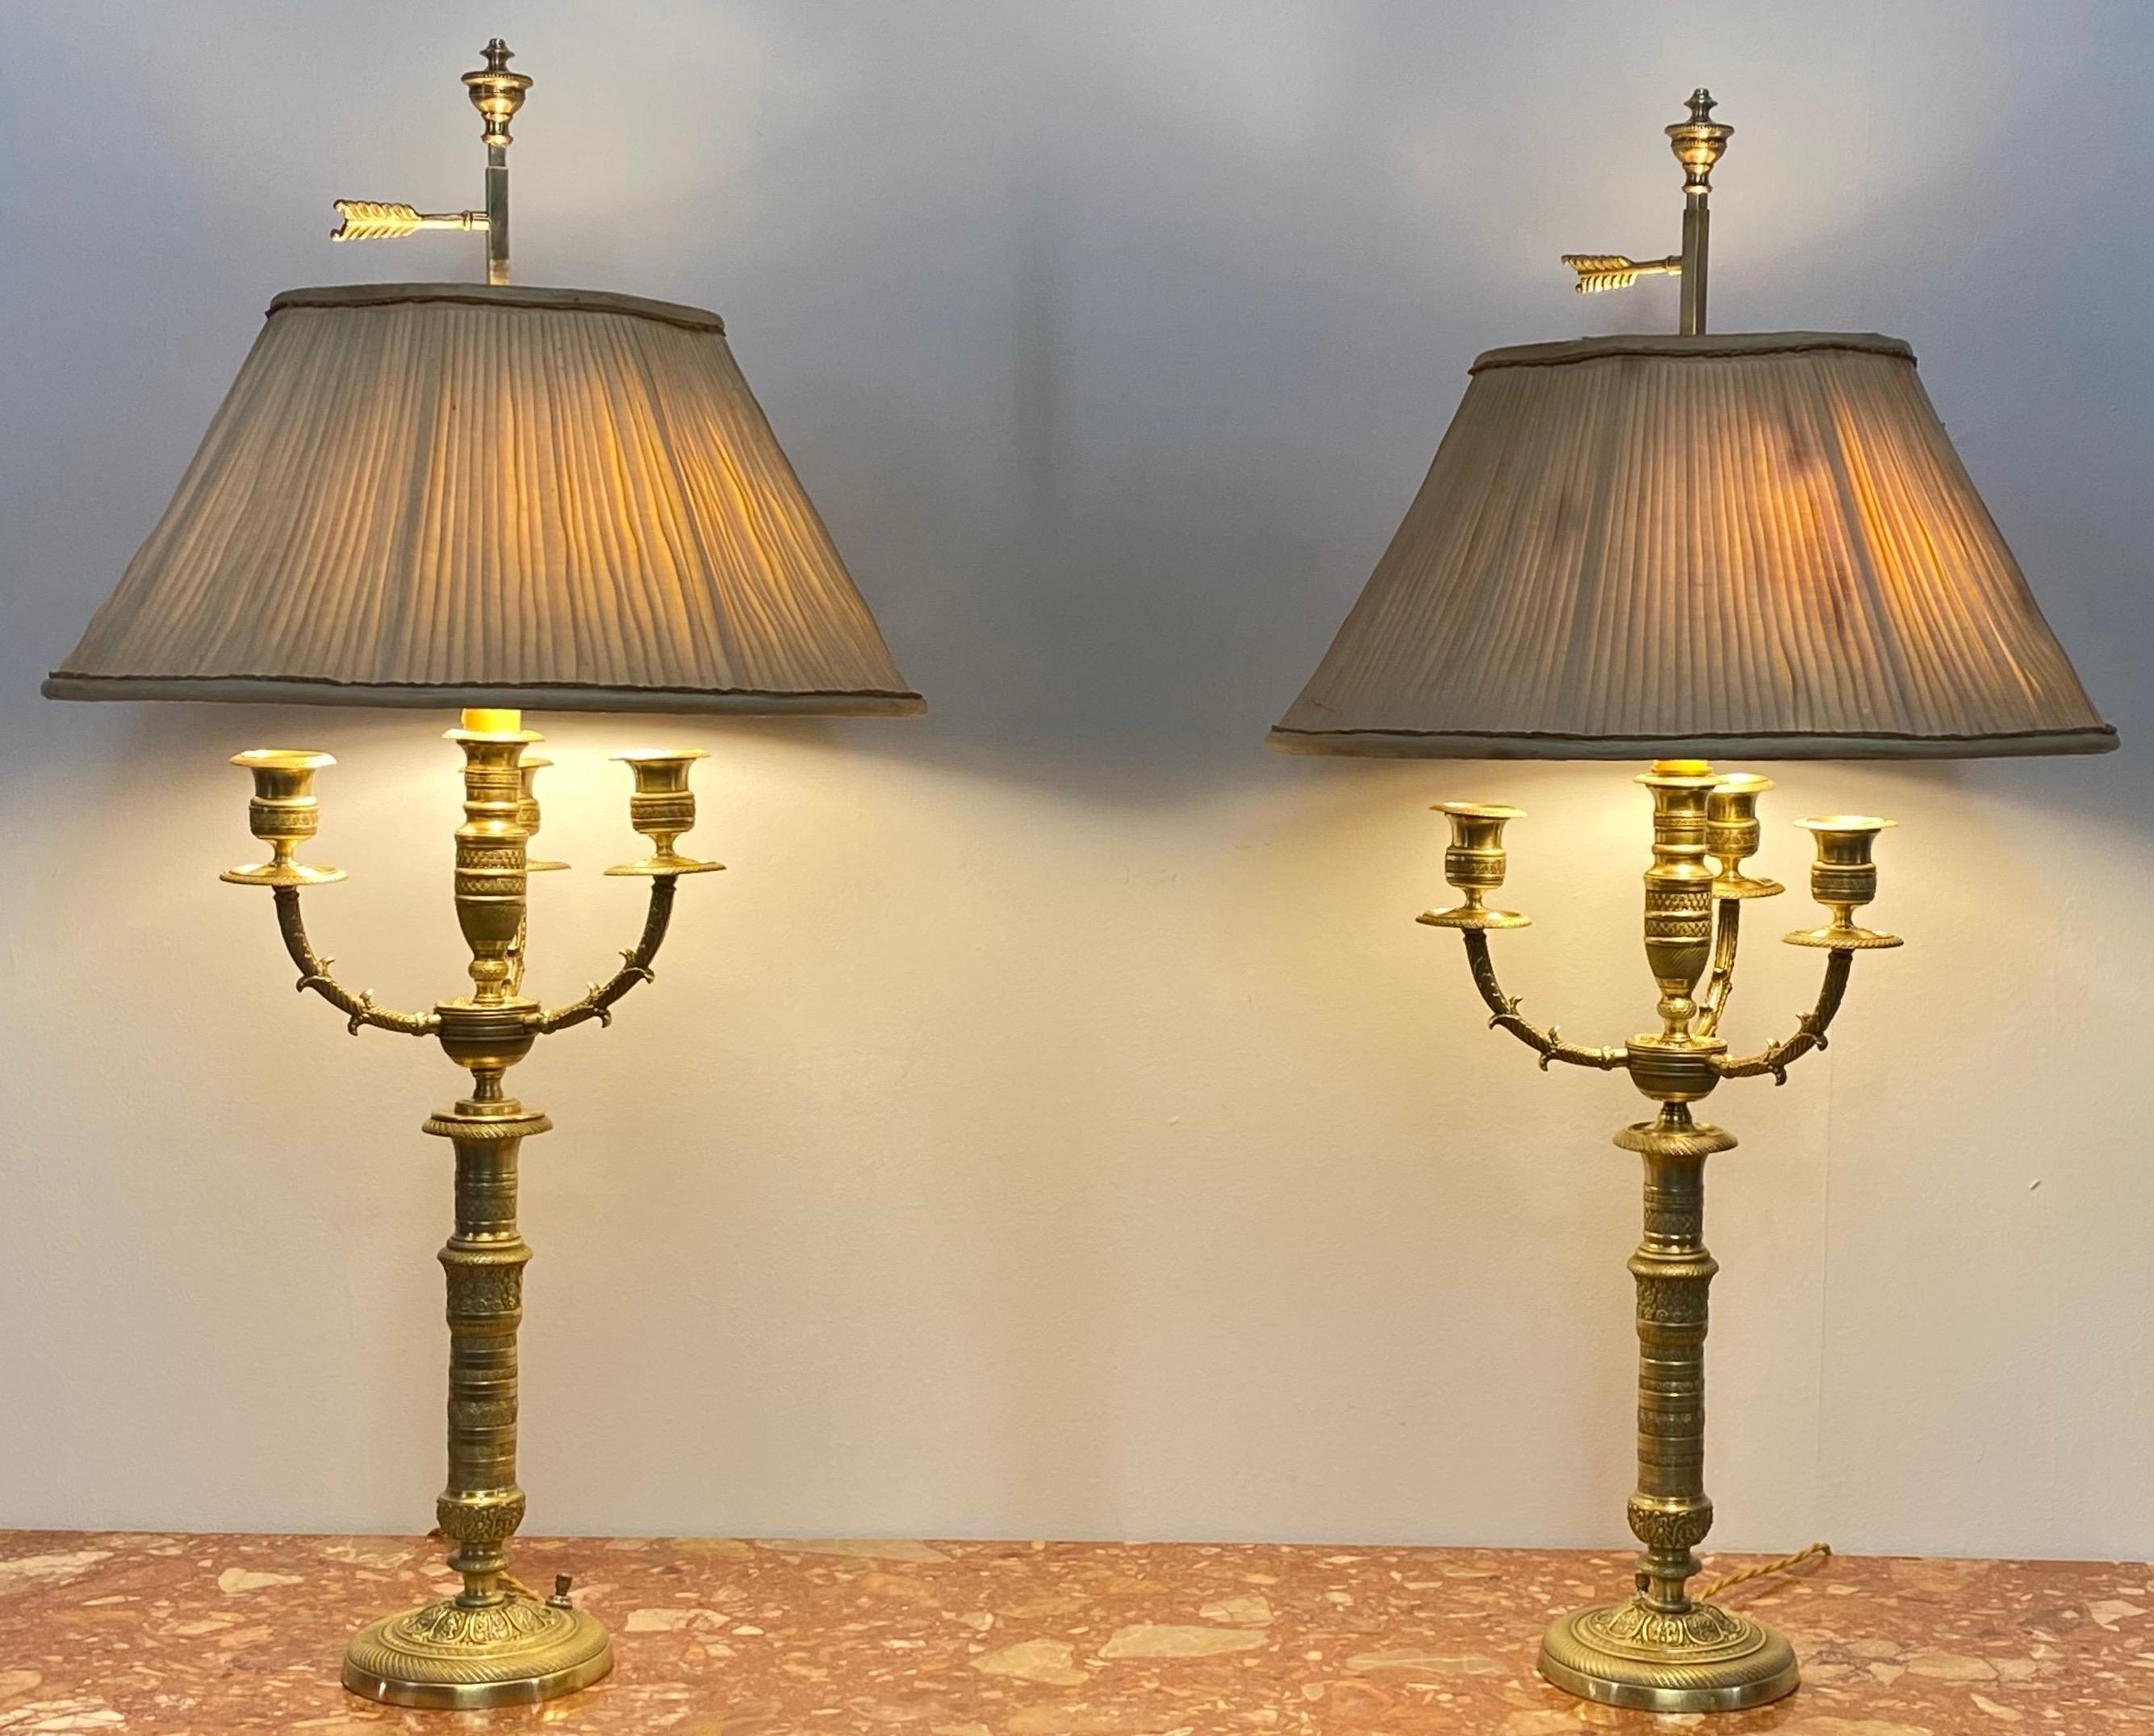 Ein Paar sehr hochwertige Messingkandelaber aus dem 19. Jahrhundert, die jetzt zu Tischlampen umfunktioniert wurden.
Professionell neu verkabelt.
Diese haben ihre ursprüngliche maßgeschneiderte Schirme, die Schirme zeigen erhebliche Schäden an den